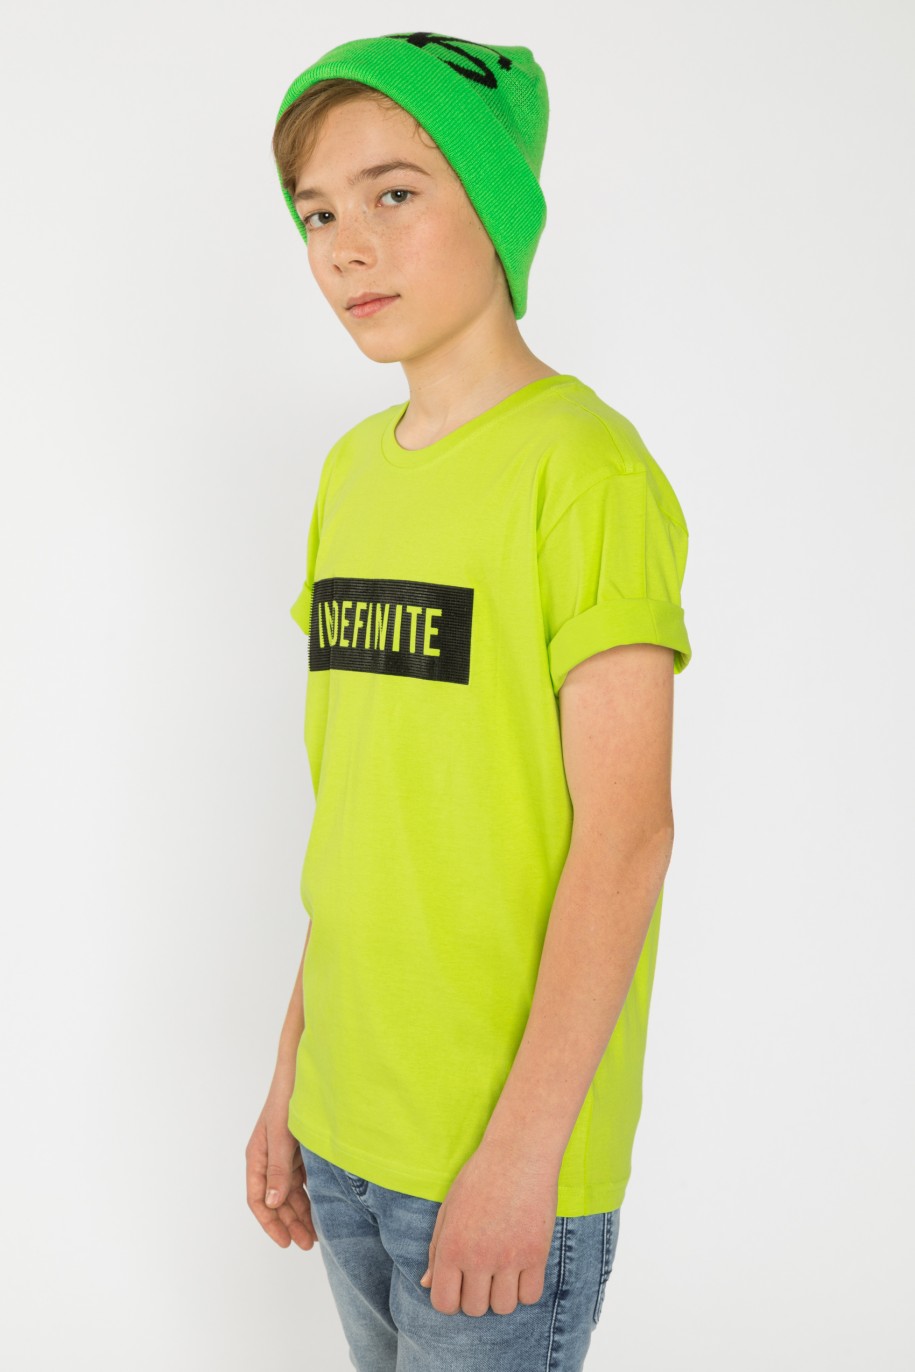 zielony t-shirt dla chłpaka z nadrukiem indefinite reporter young